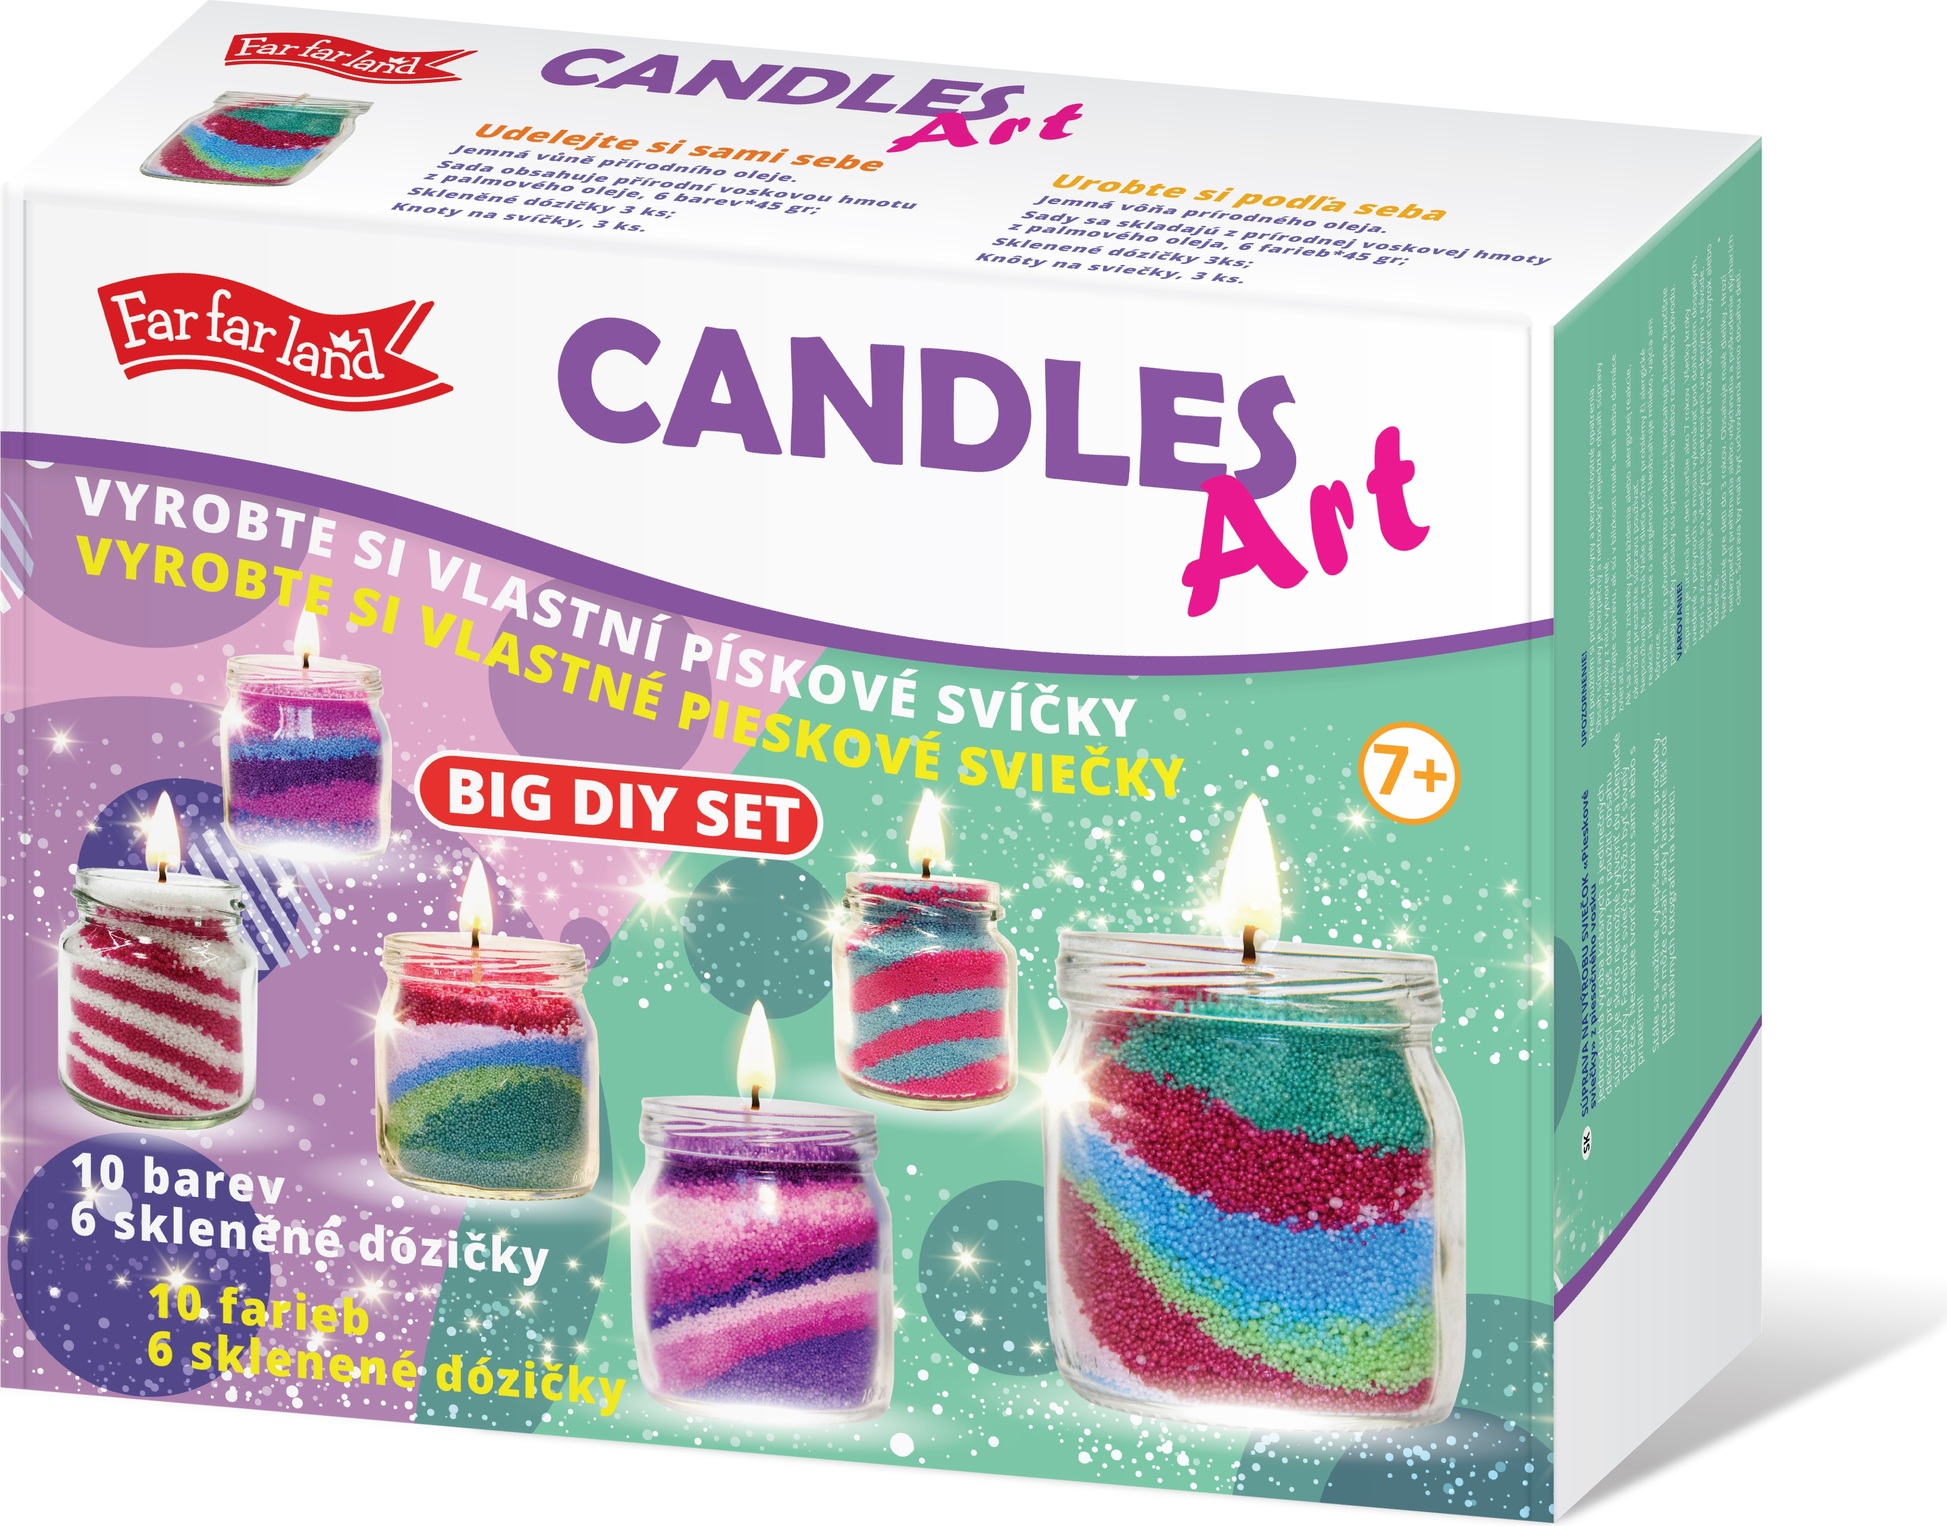 Vyrob si vlastní svíčku - velký kreativní set - 6 dóz, 10 barev